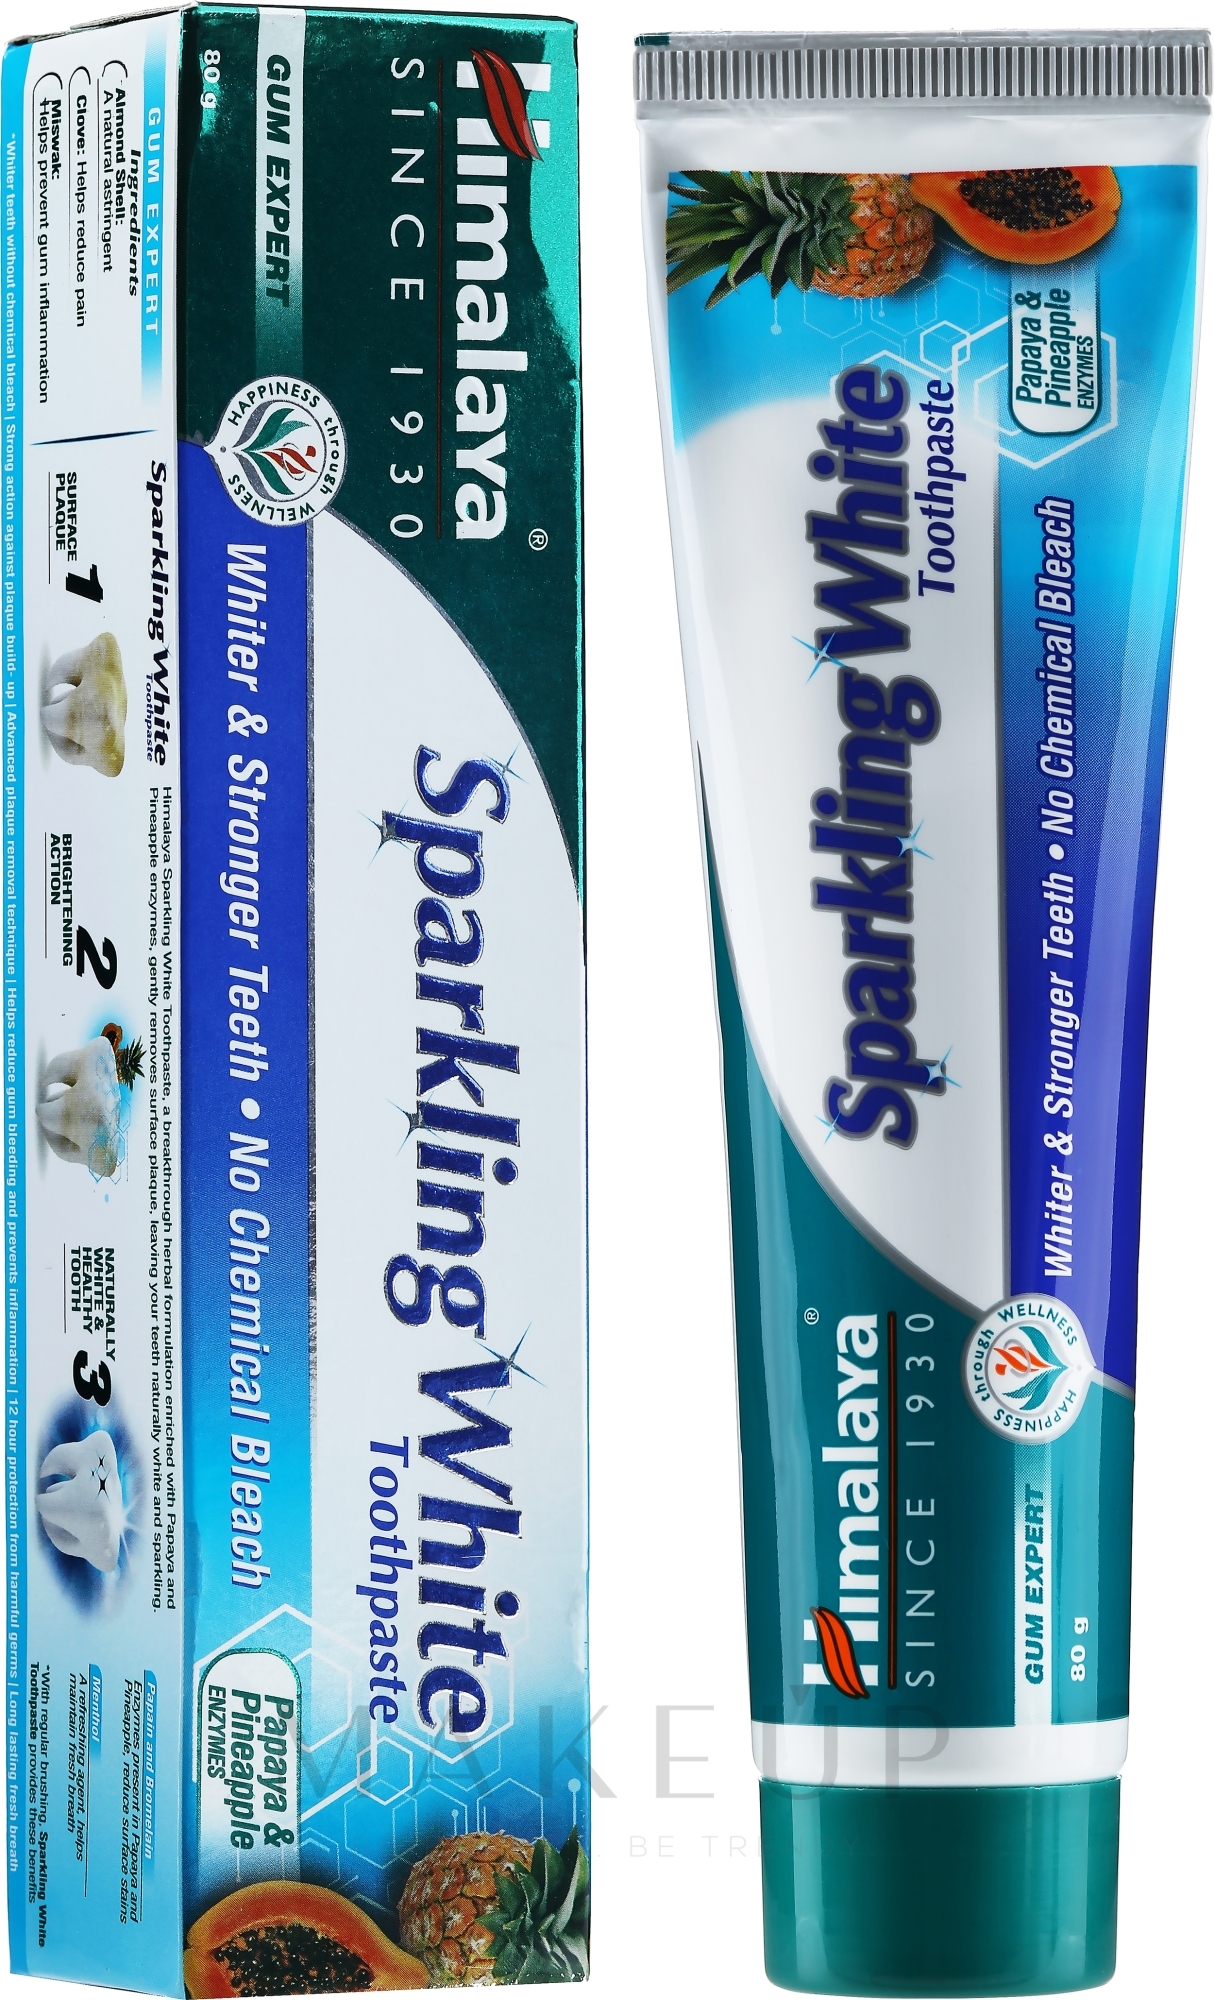 Kräuter-Zahnpasta für strahlend weiße Zähne Gum Expert Sparkly White - Himalaya Herbals Gum Expert Sparkly White — Foto 80 g